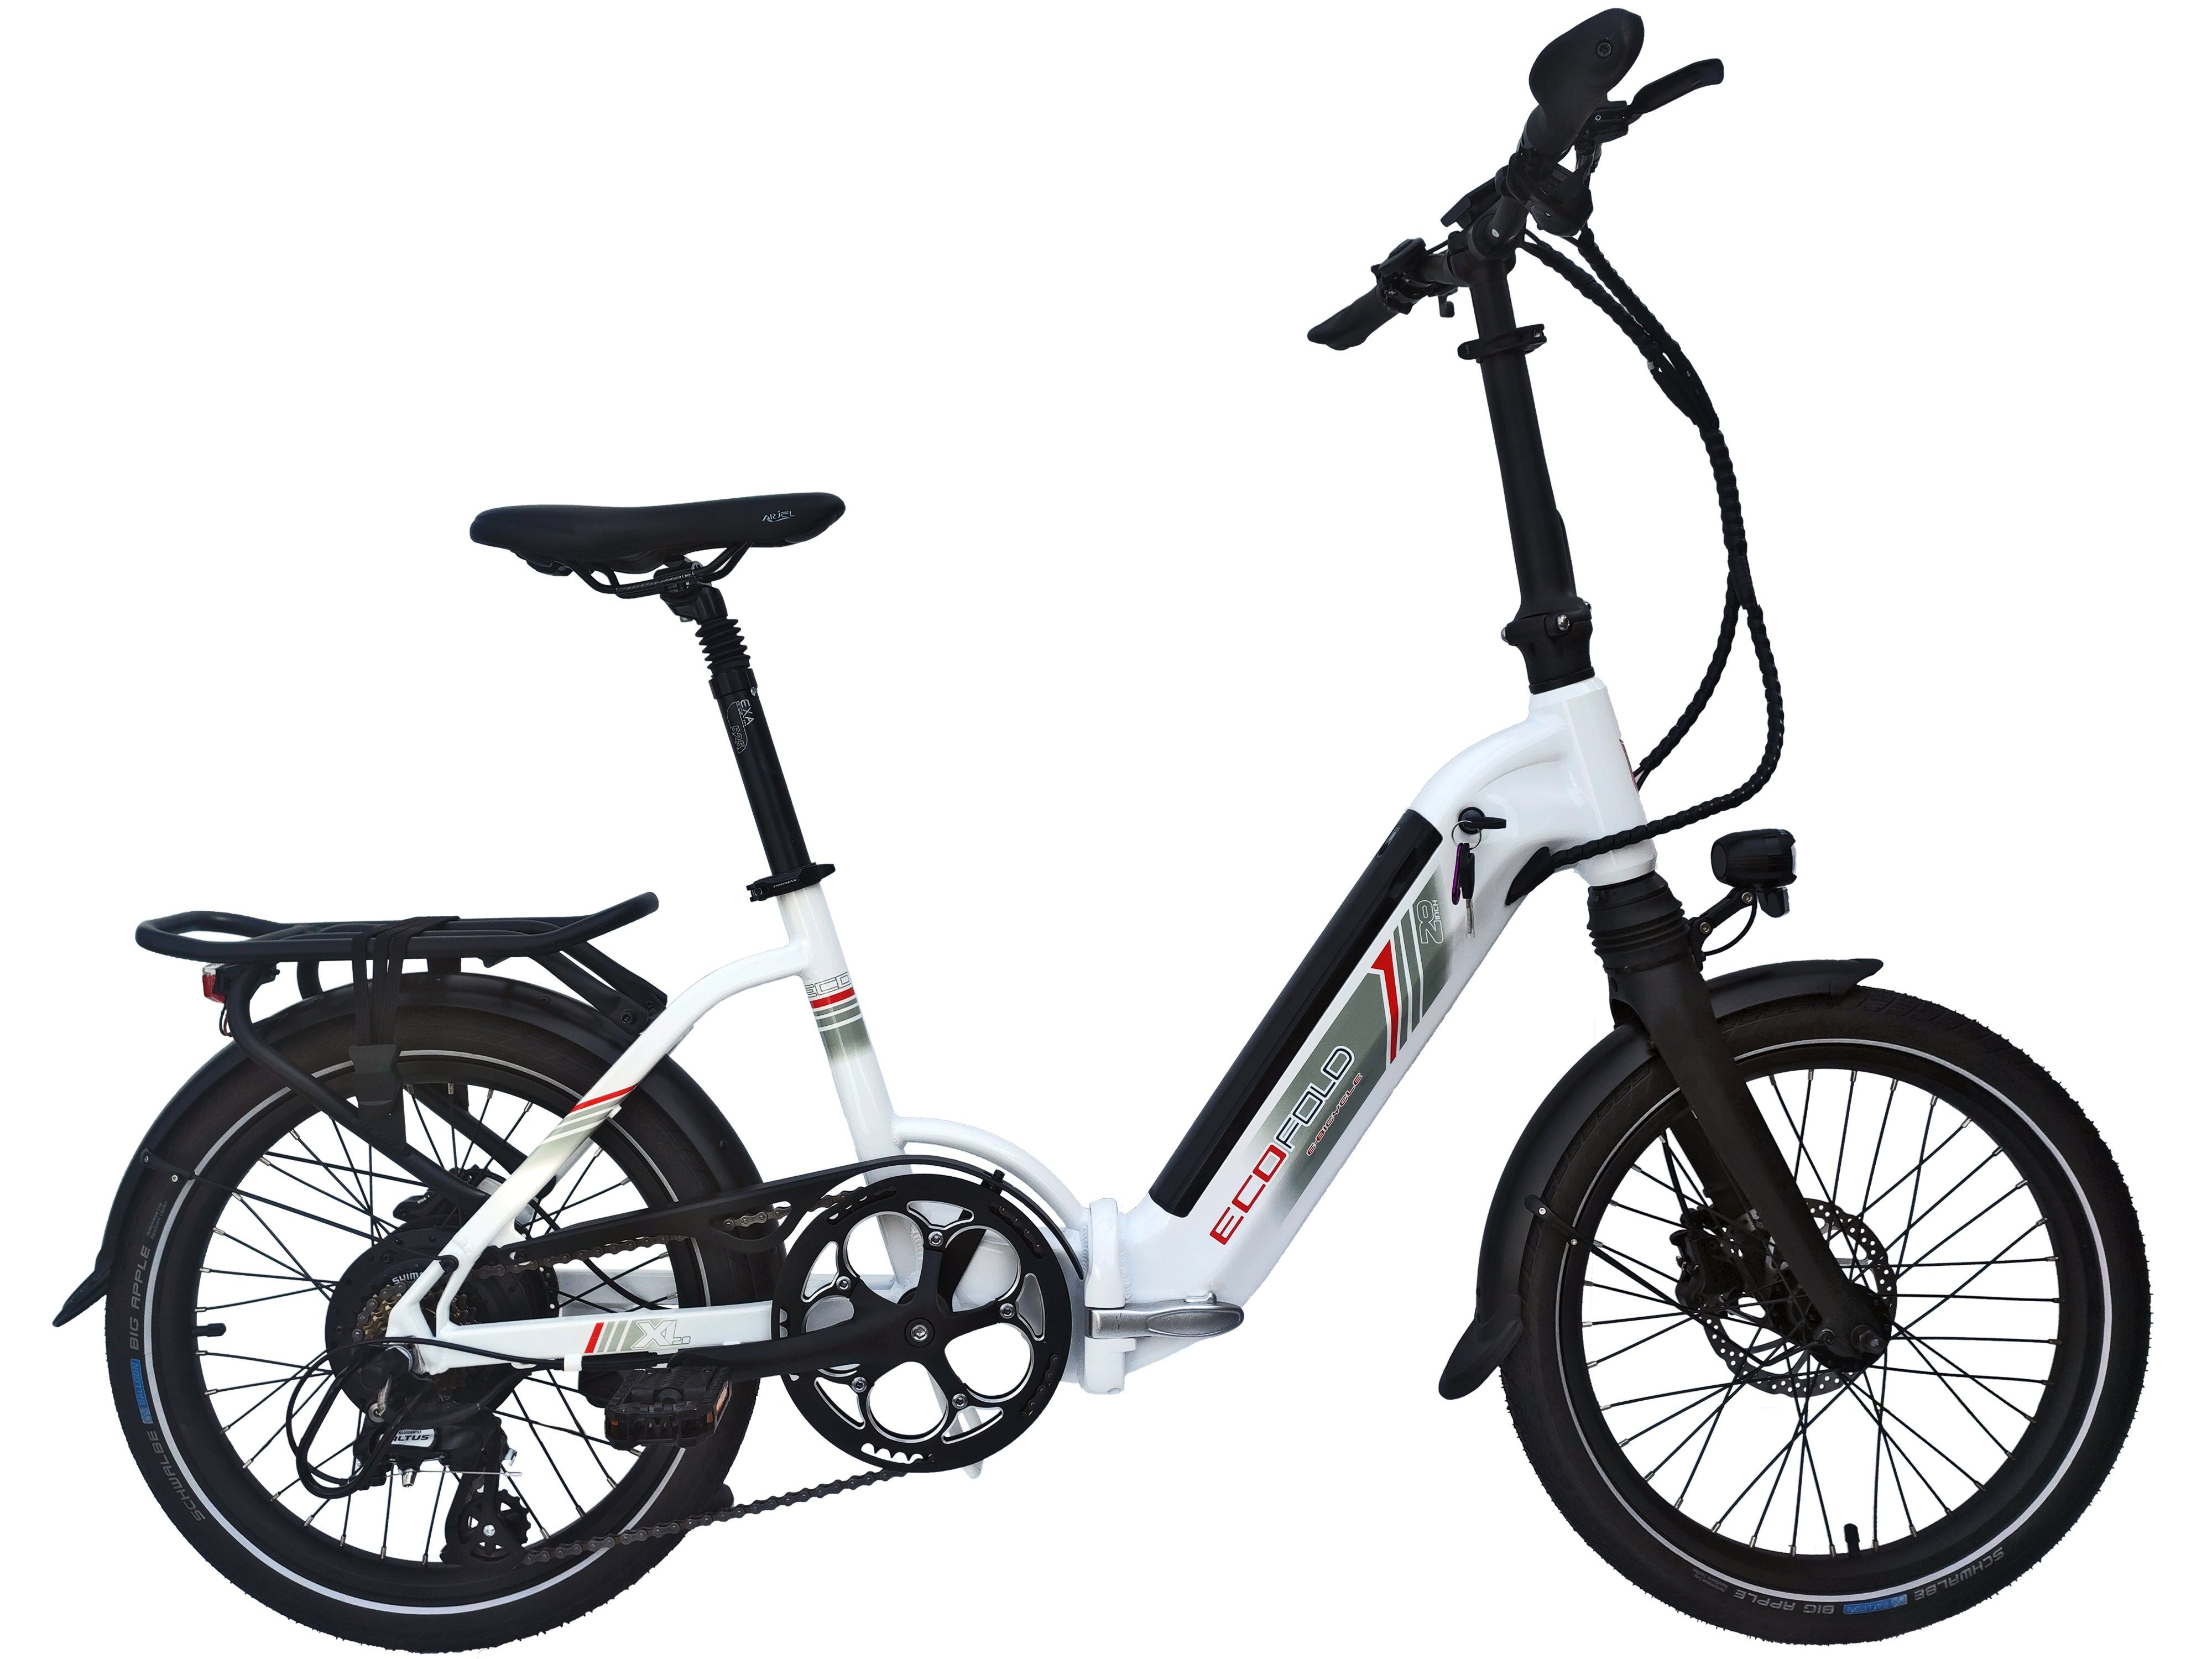 Ecofold E-Bike Kettenschaltung, Heckmotor, 250W weiss, weiẞ 504,00 Shimano 20 Heckmotor Trigger 7 E-Bike Akku Gang Wh Schaltwerk, Shimano BFH400N Bafang 7-Gang Kettenschaltung Zoll ECOFOLD